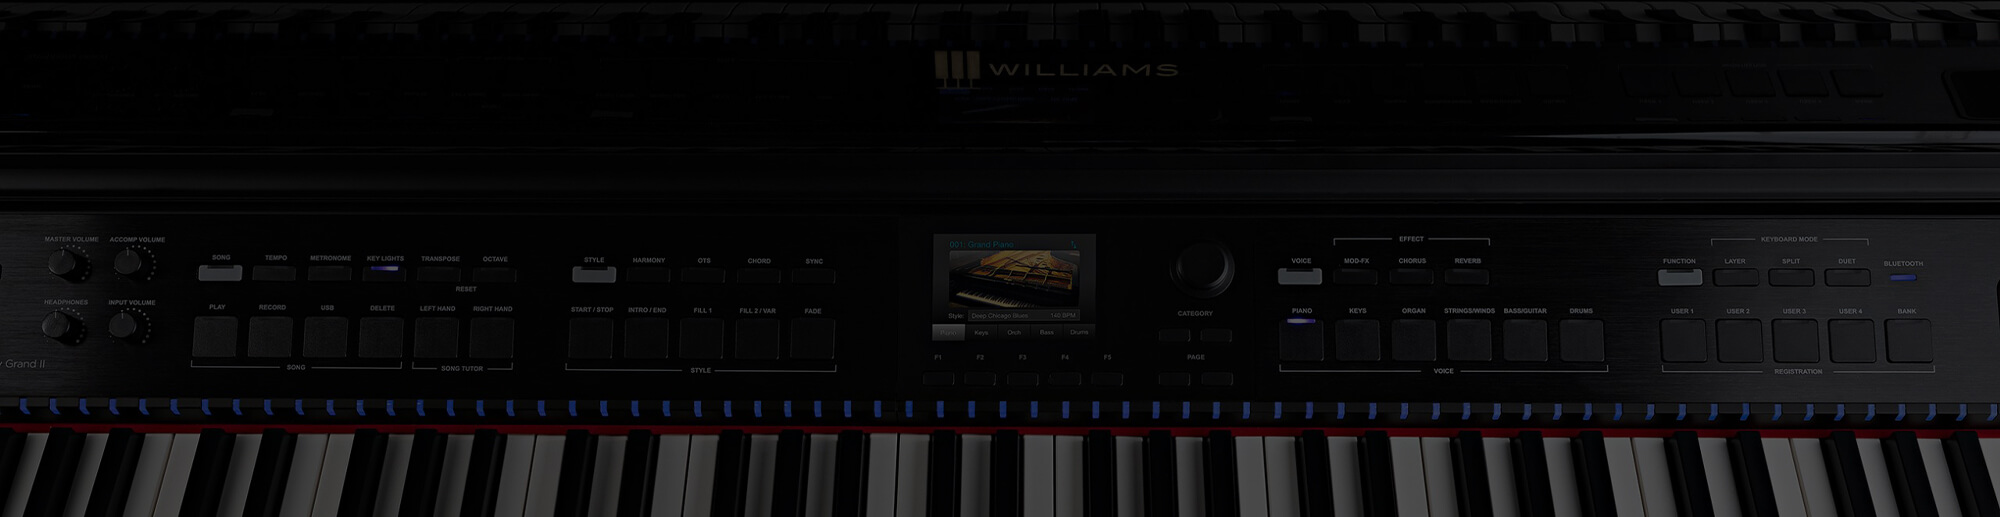 Williams digital console piano.